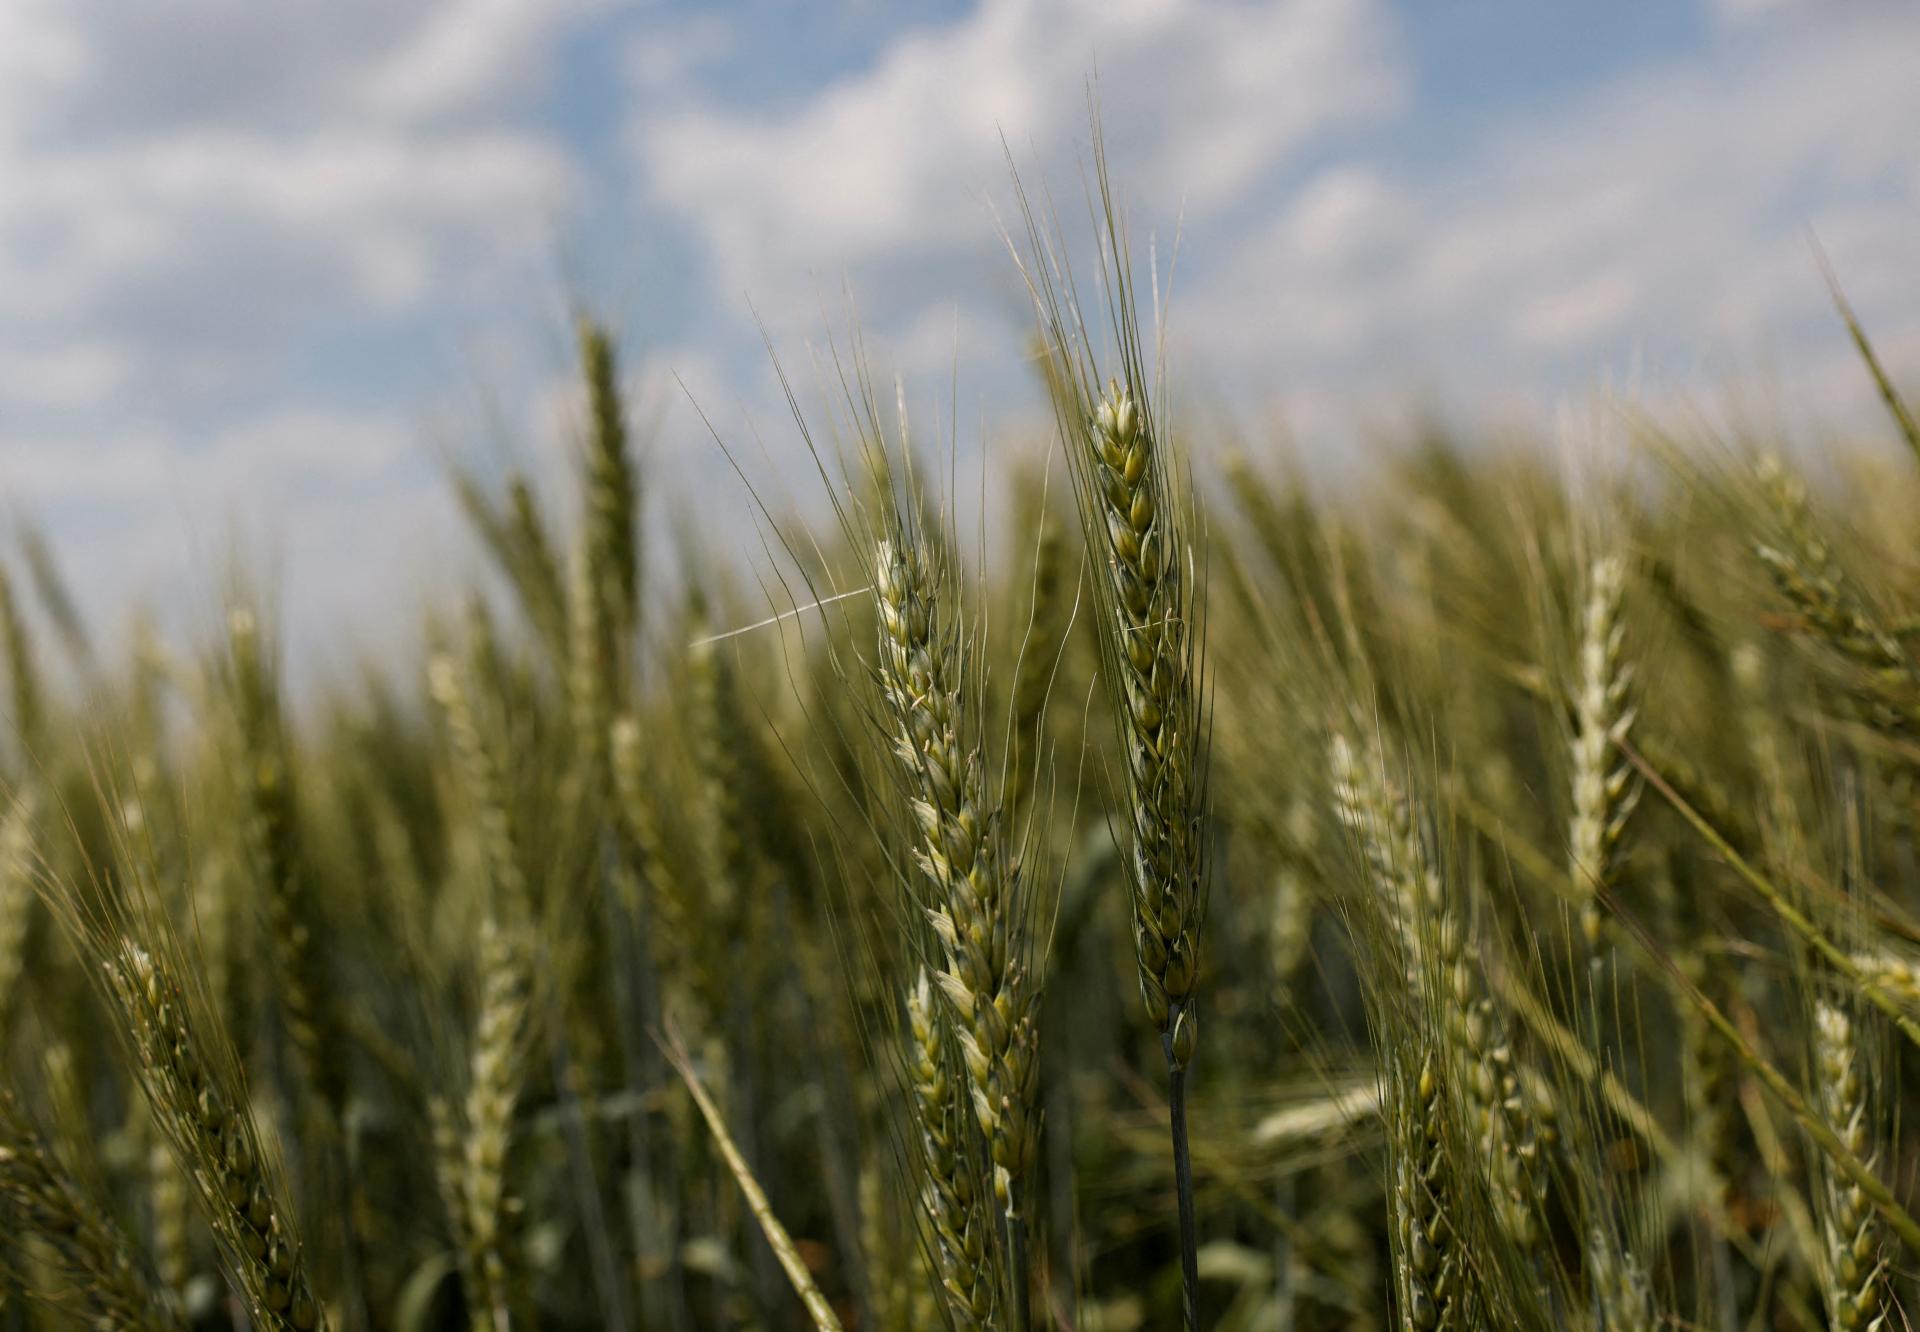 Úroda obilia na Ukrajine bude tento rok ešte nižšia než vlani. Výmera sa zníži na 53 miliónov ton